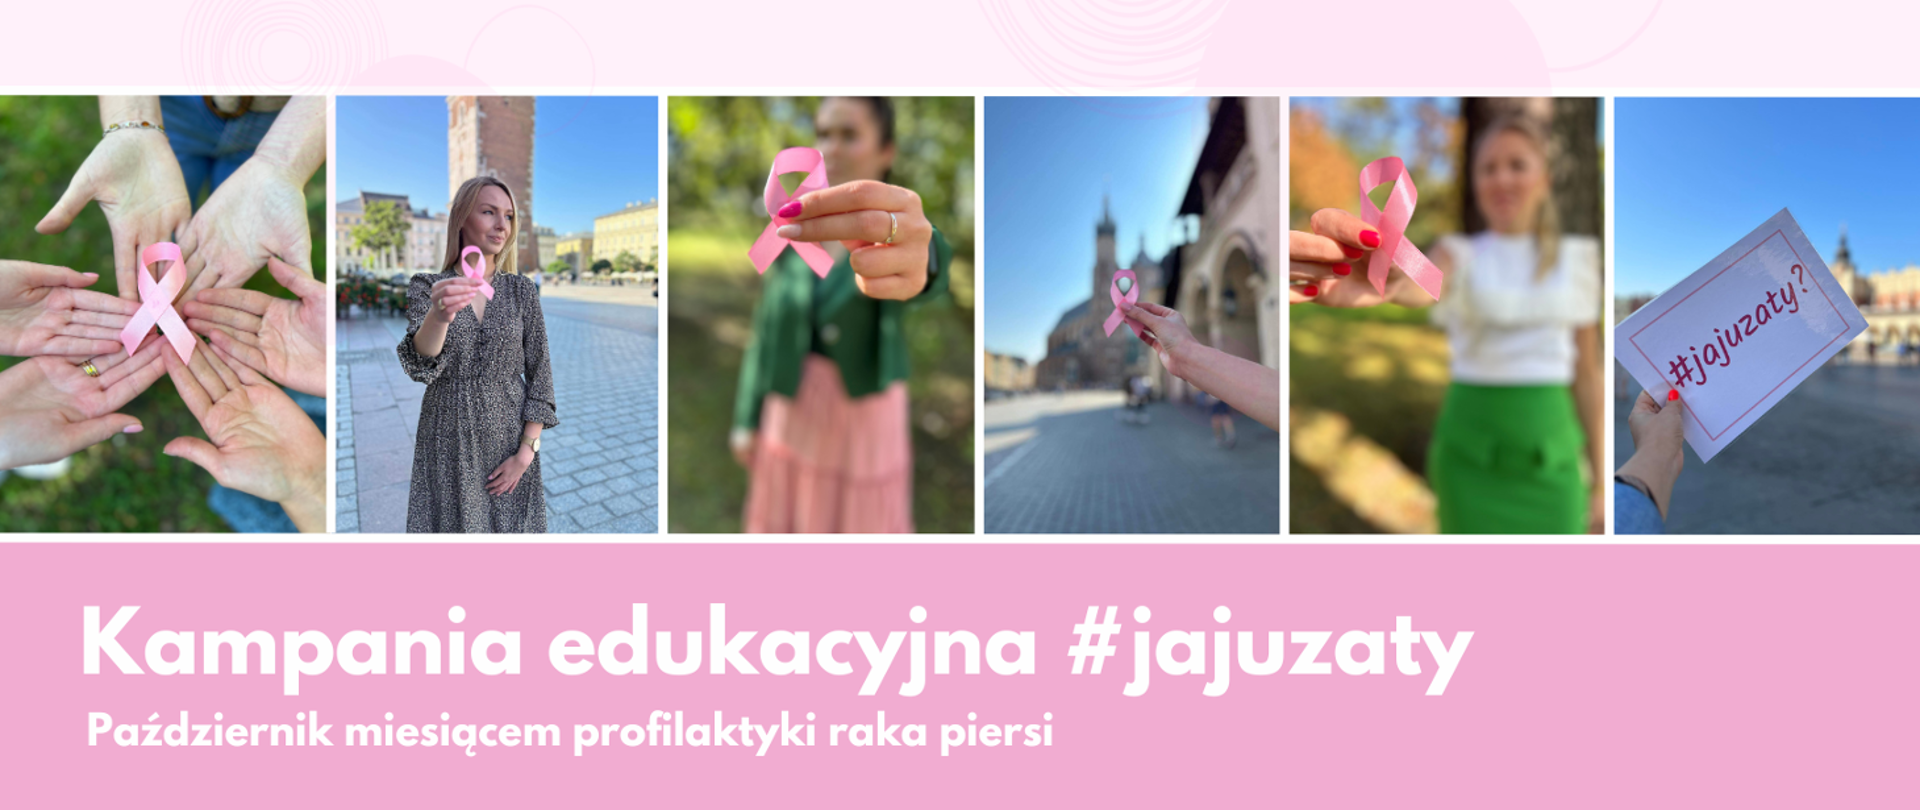 Zdjęcia młodych kobiet trzymających różowe kokardki, na różowym tle. napis Kampania edukacyjna #jajuzaty październik miesiącem profilaktyki raka piersi